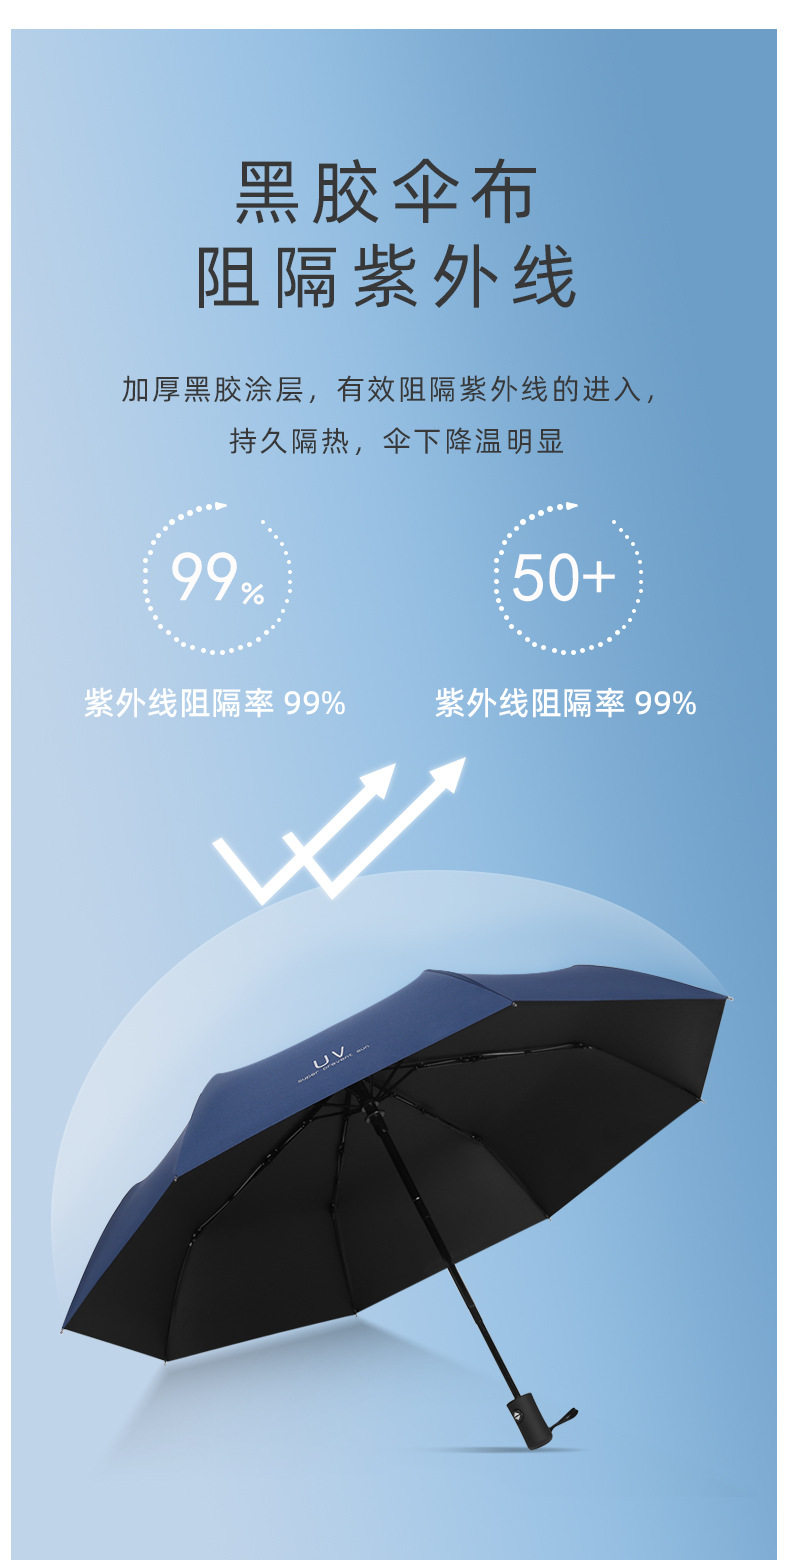 际华3521 自动三折雨伞HL0001-黑色